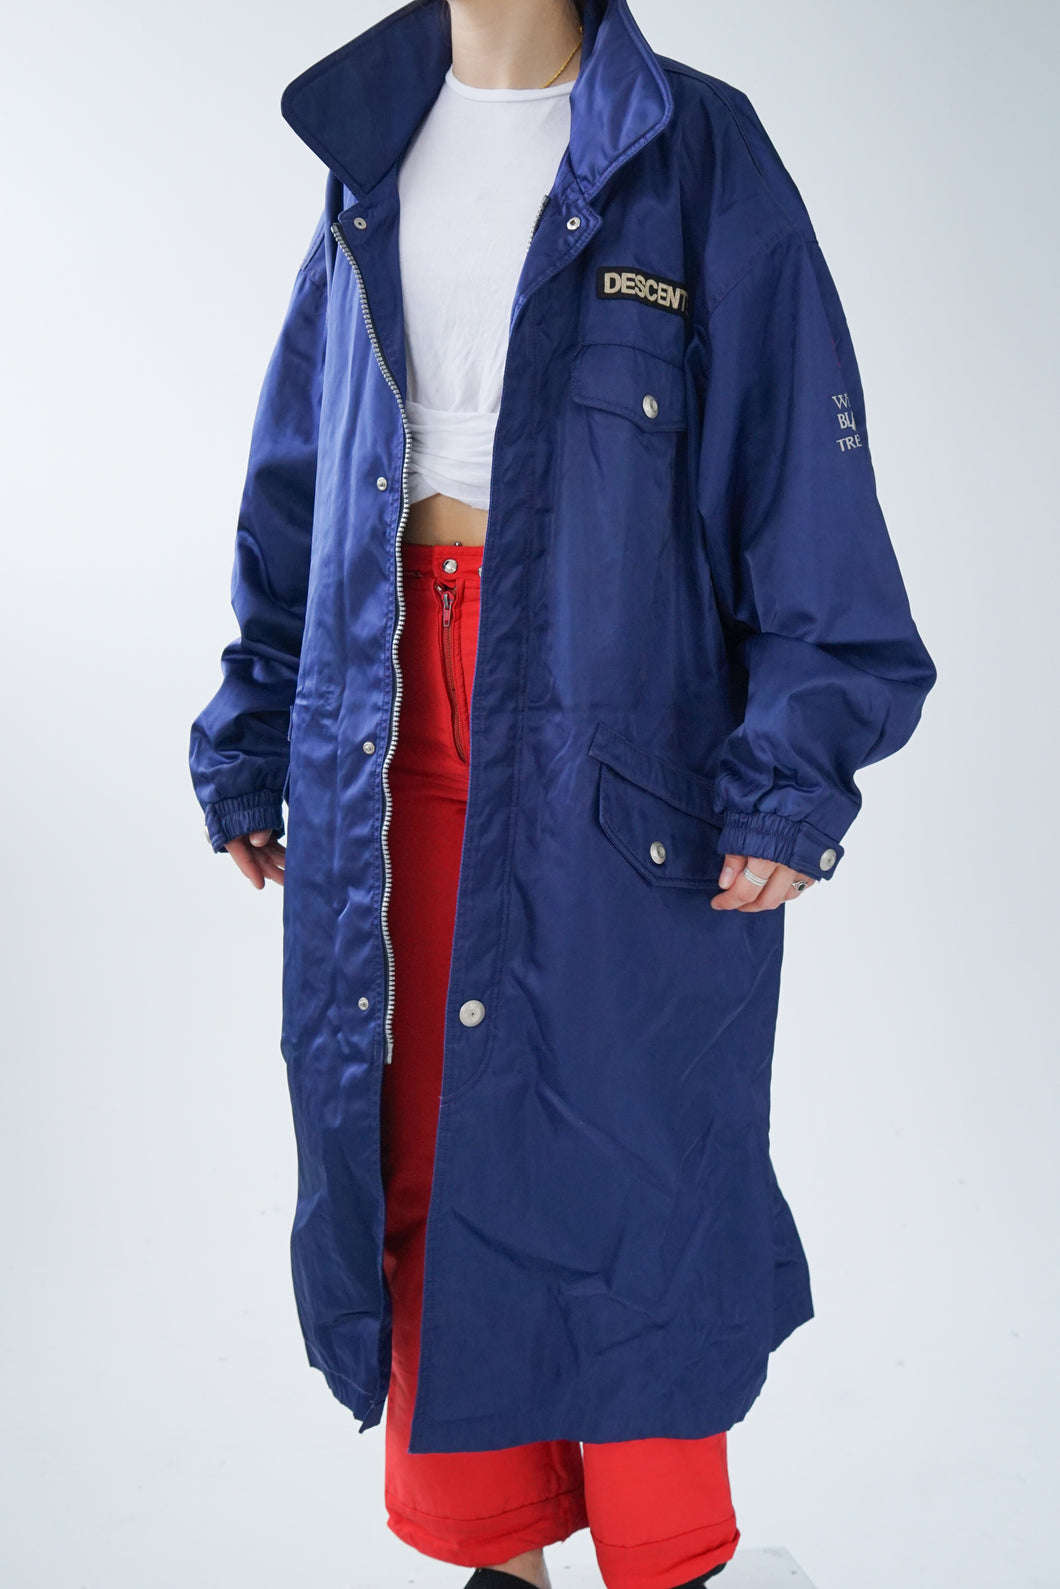 Manteau long de ski léger vintage Descente bleu métallique pour homme taille L